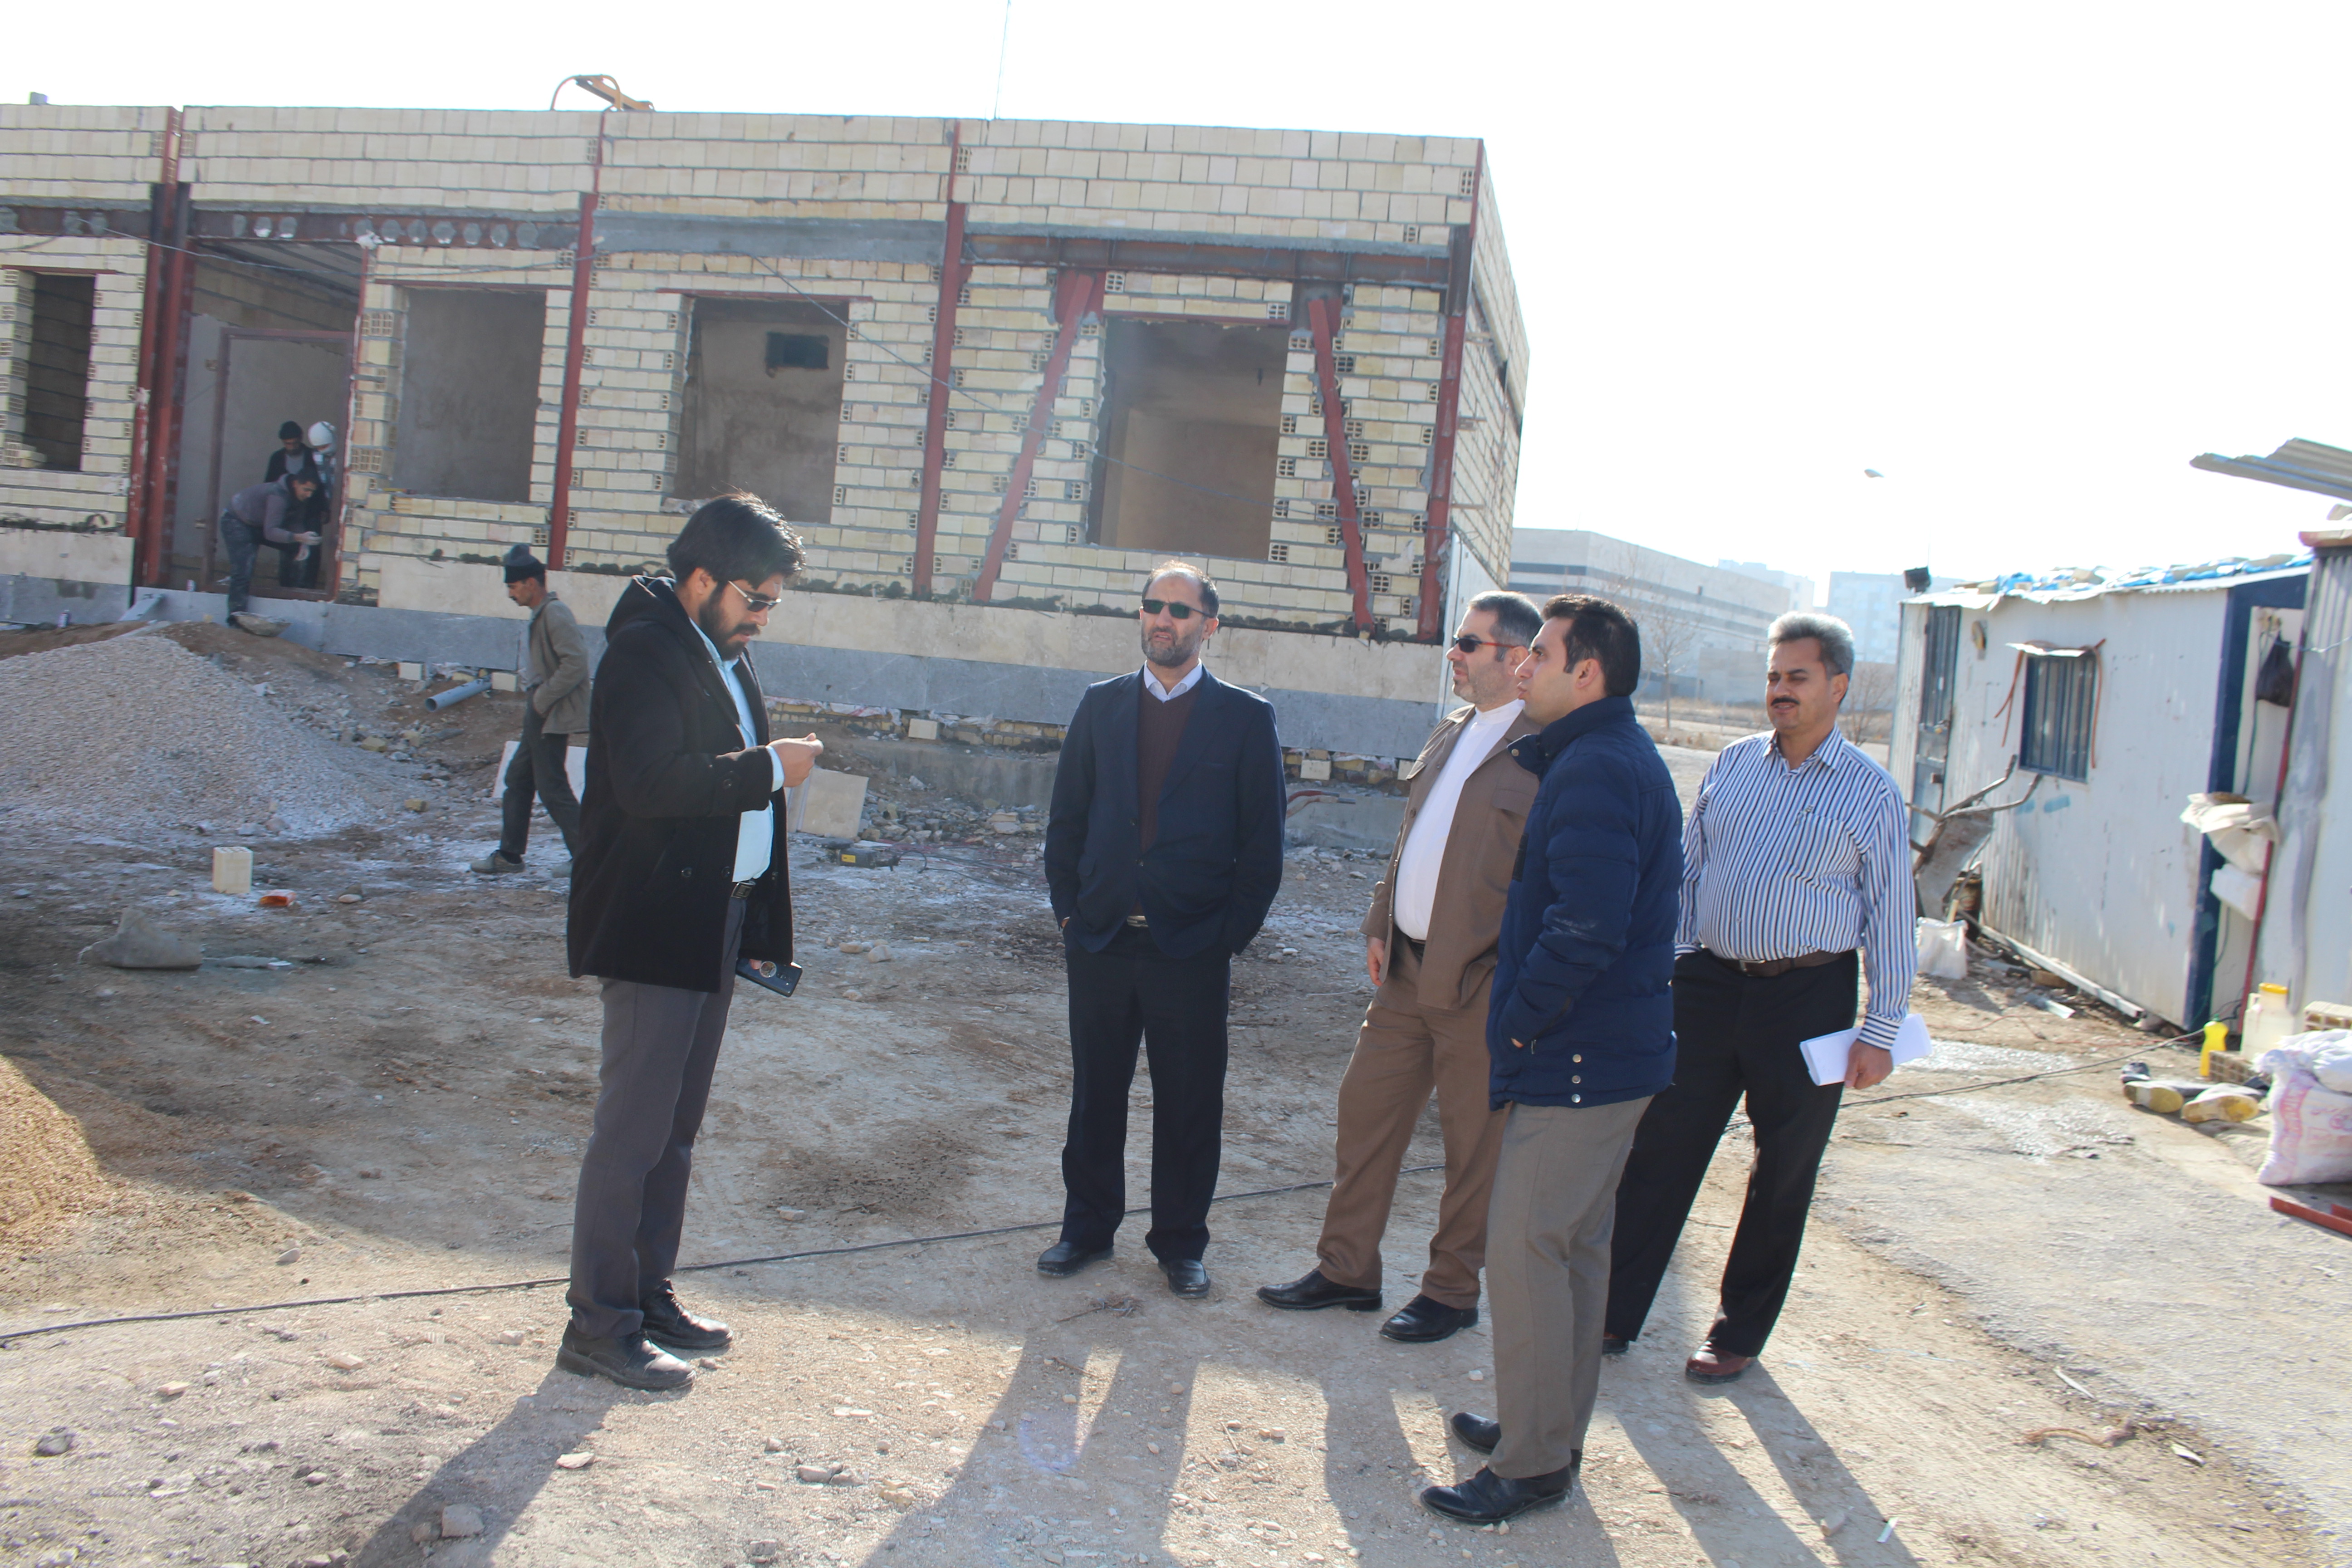 بازدید مدیریتی از پروژه احداث پانسیون پزشکان در بیمارستان امام علی (ع) بجنورد